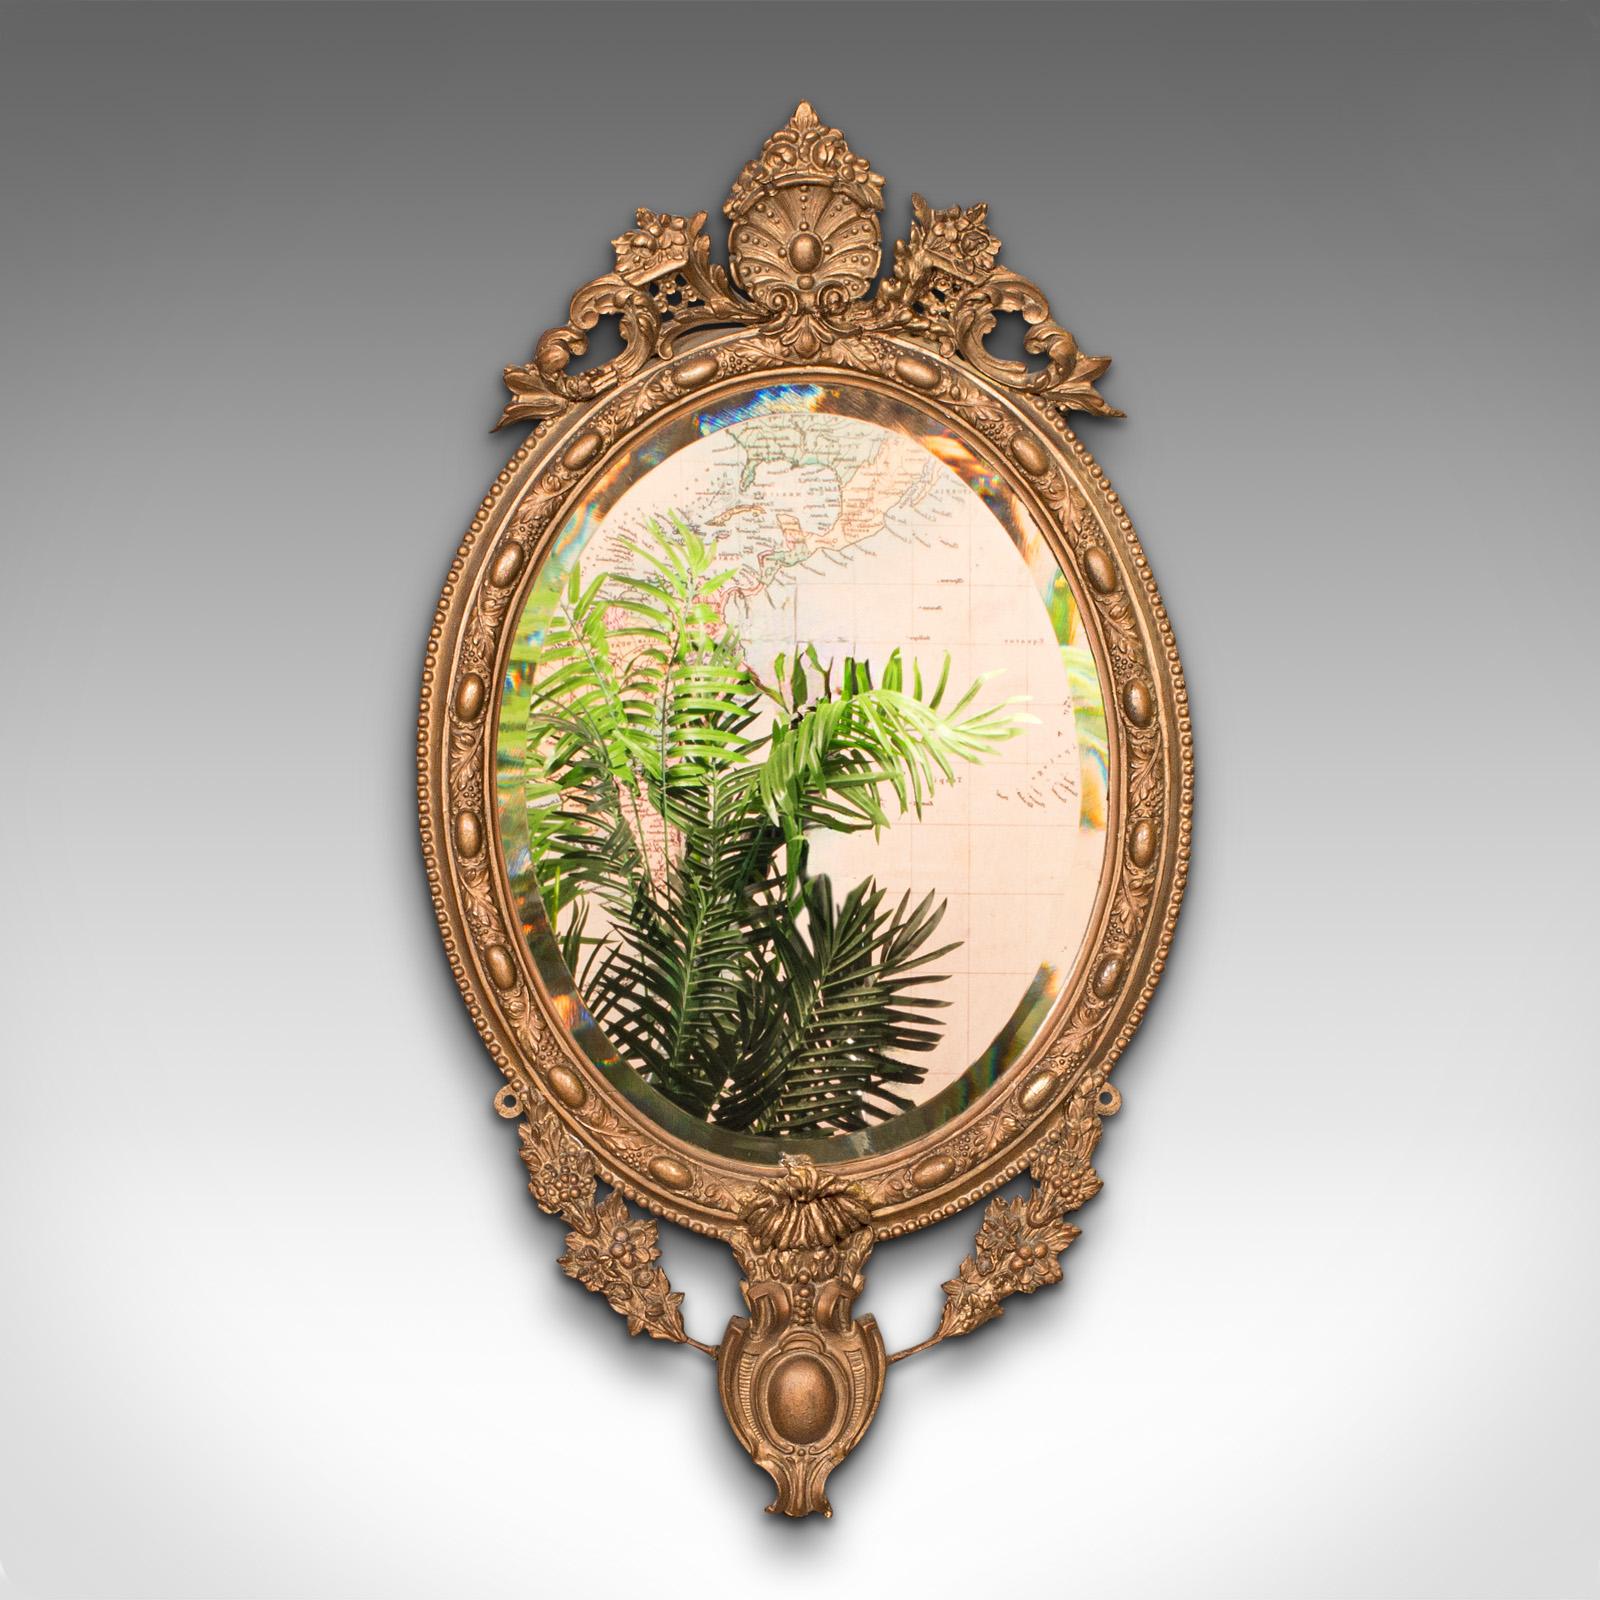 Dies ist ein antiker, verzierter Wandspiegel. Ein französischer Spiegel aus vergoldetem Gesso und abgeschrägtem Glas aus der spätviktorianischen Zeit, um 1900.

Flotter Wandspiegel mit kontinentaler Eleganz und Verzierungen
Zeigt eine wünschenswerte